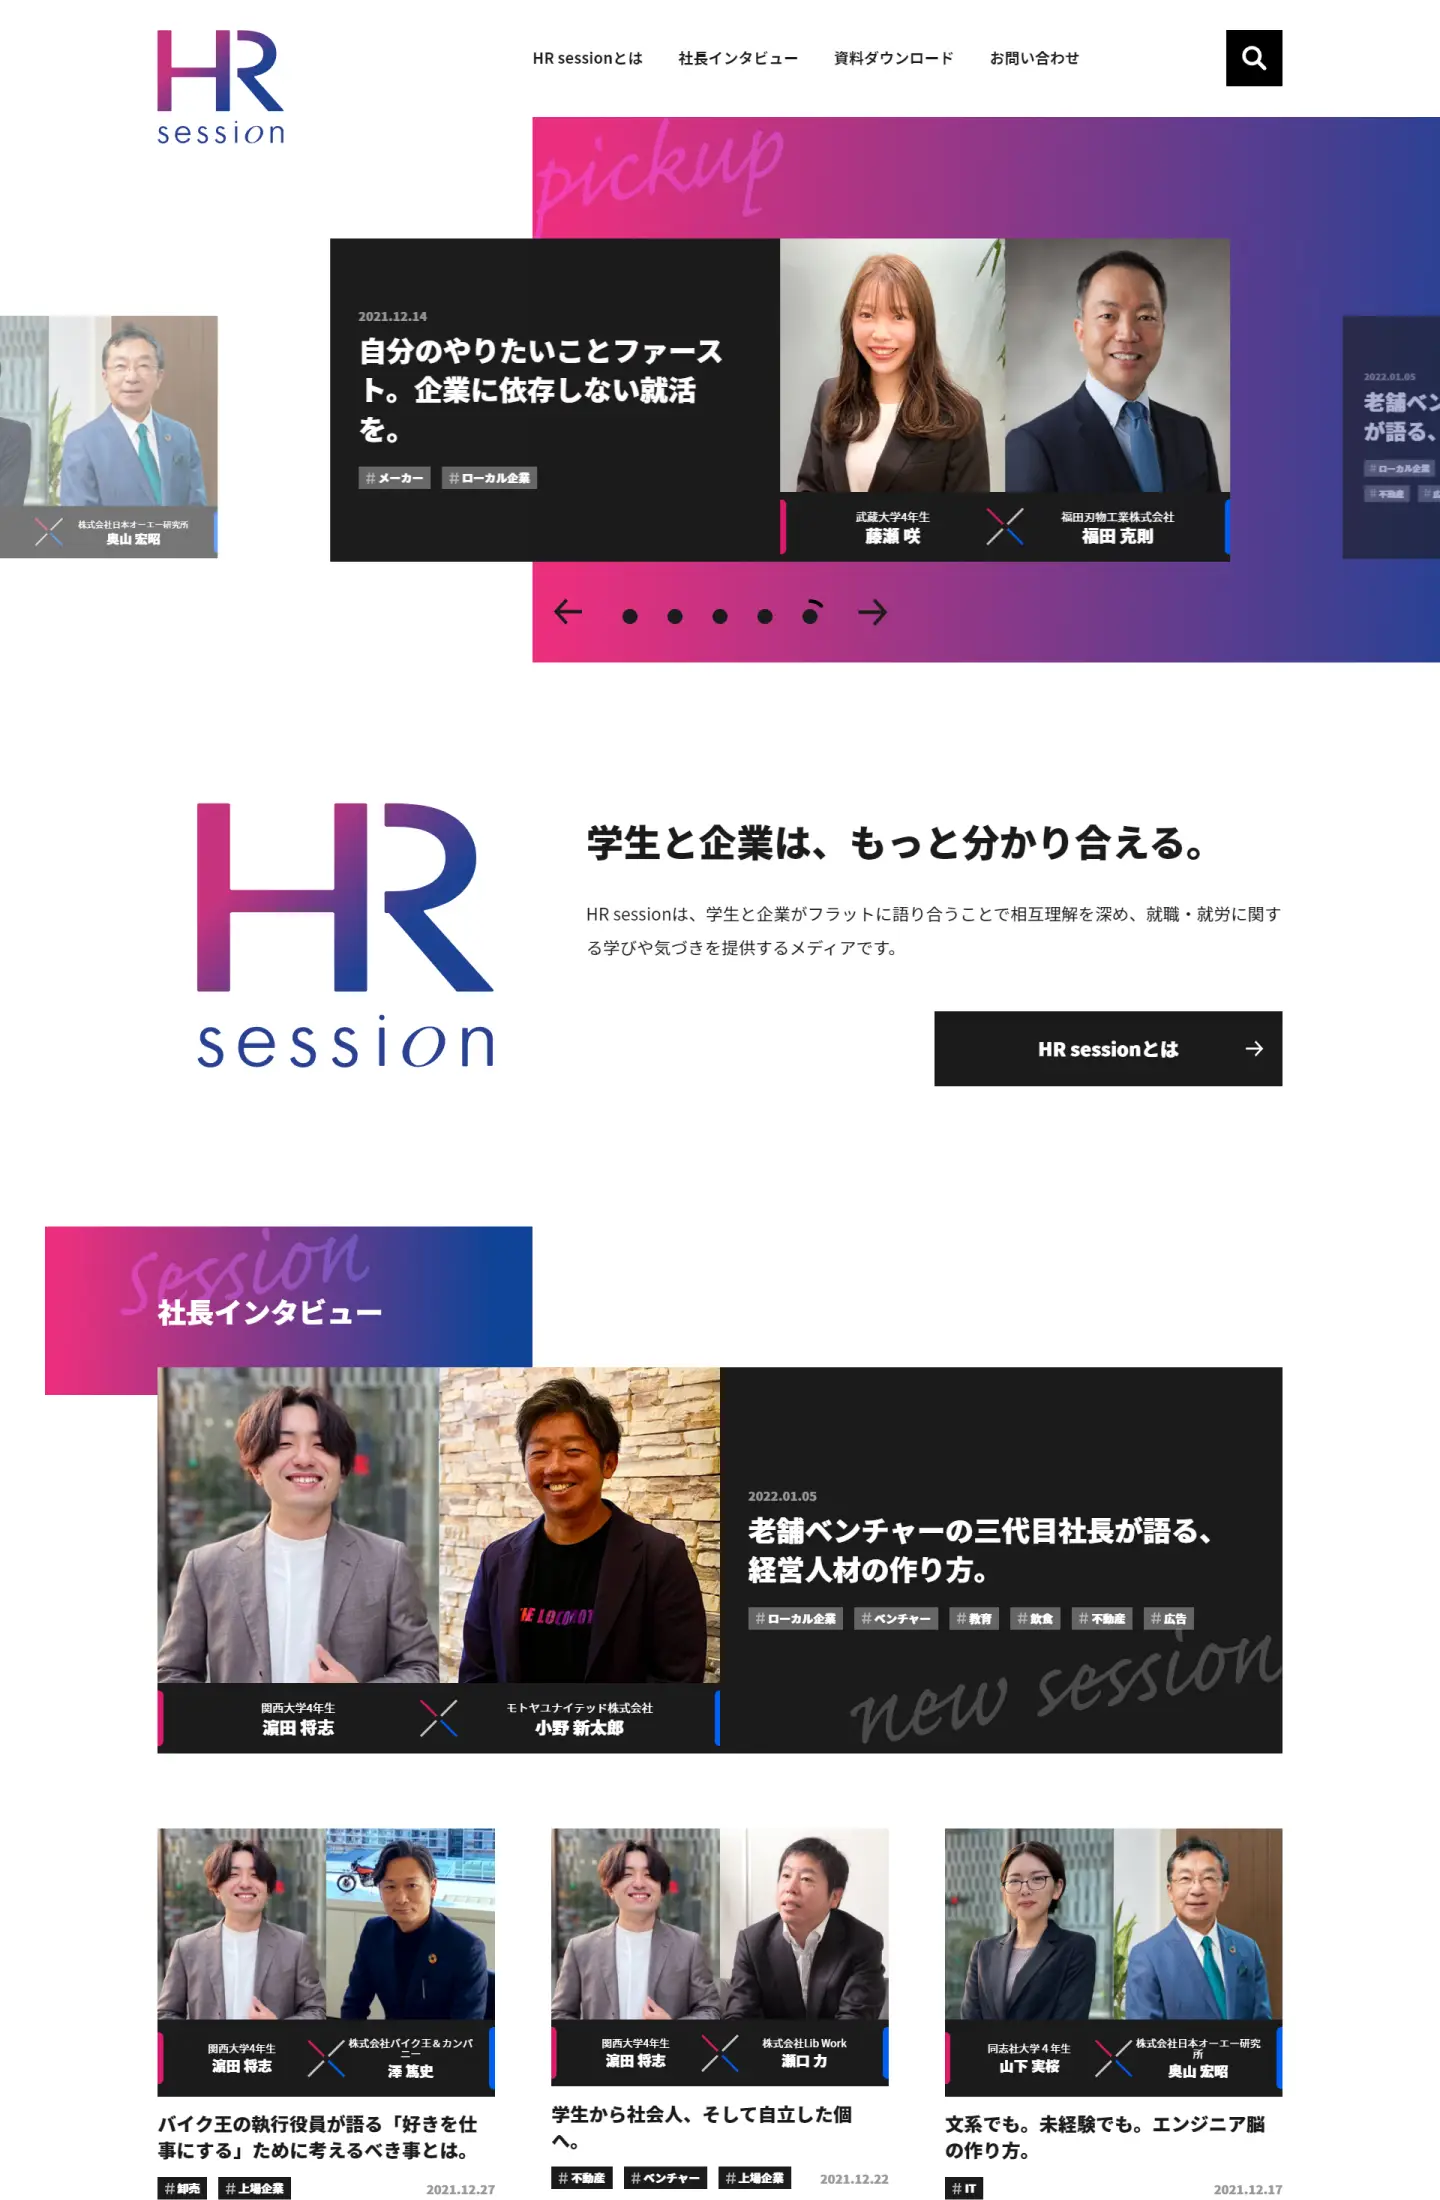 ㈱ クイック様 - HR session